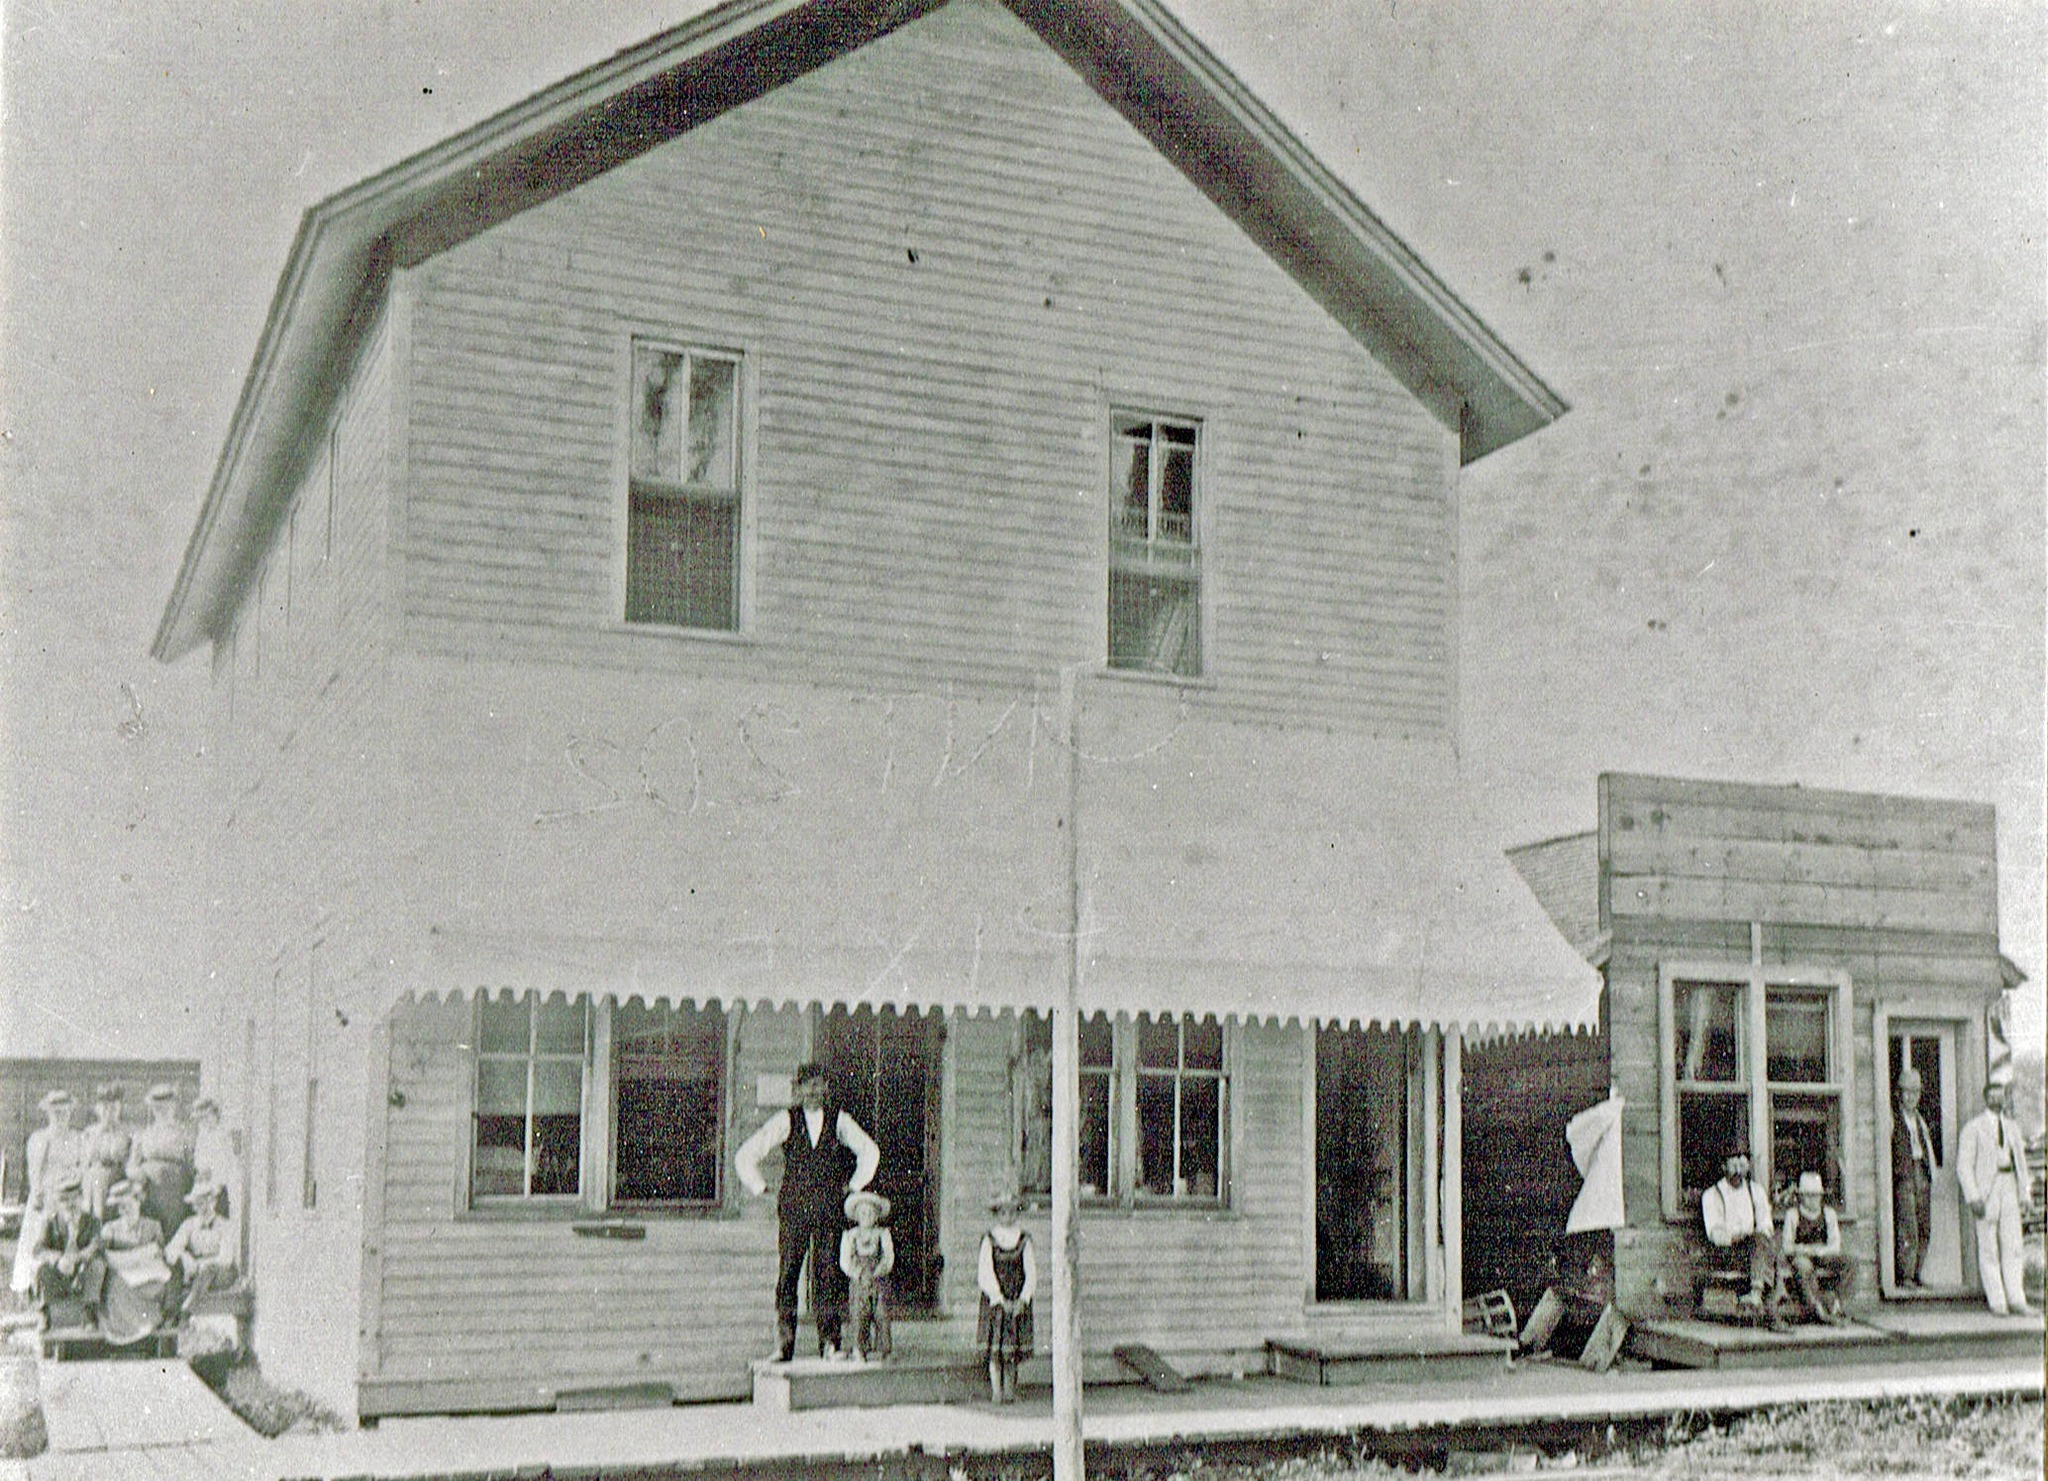 Original Shaw building